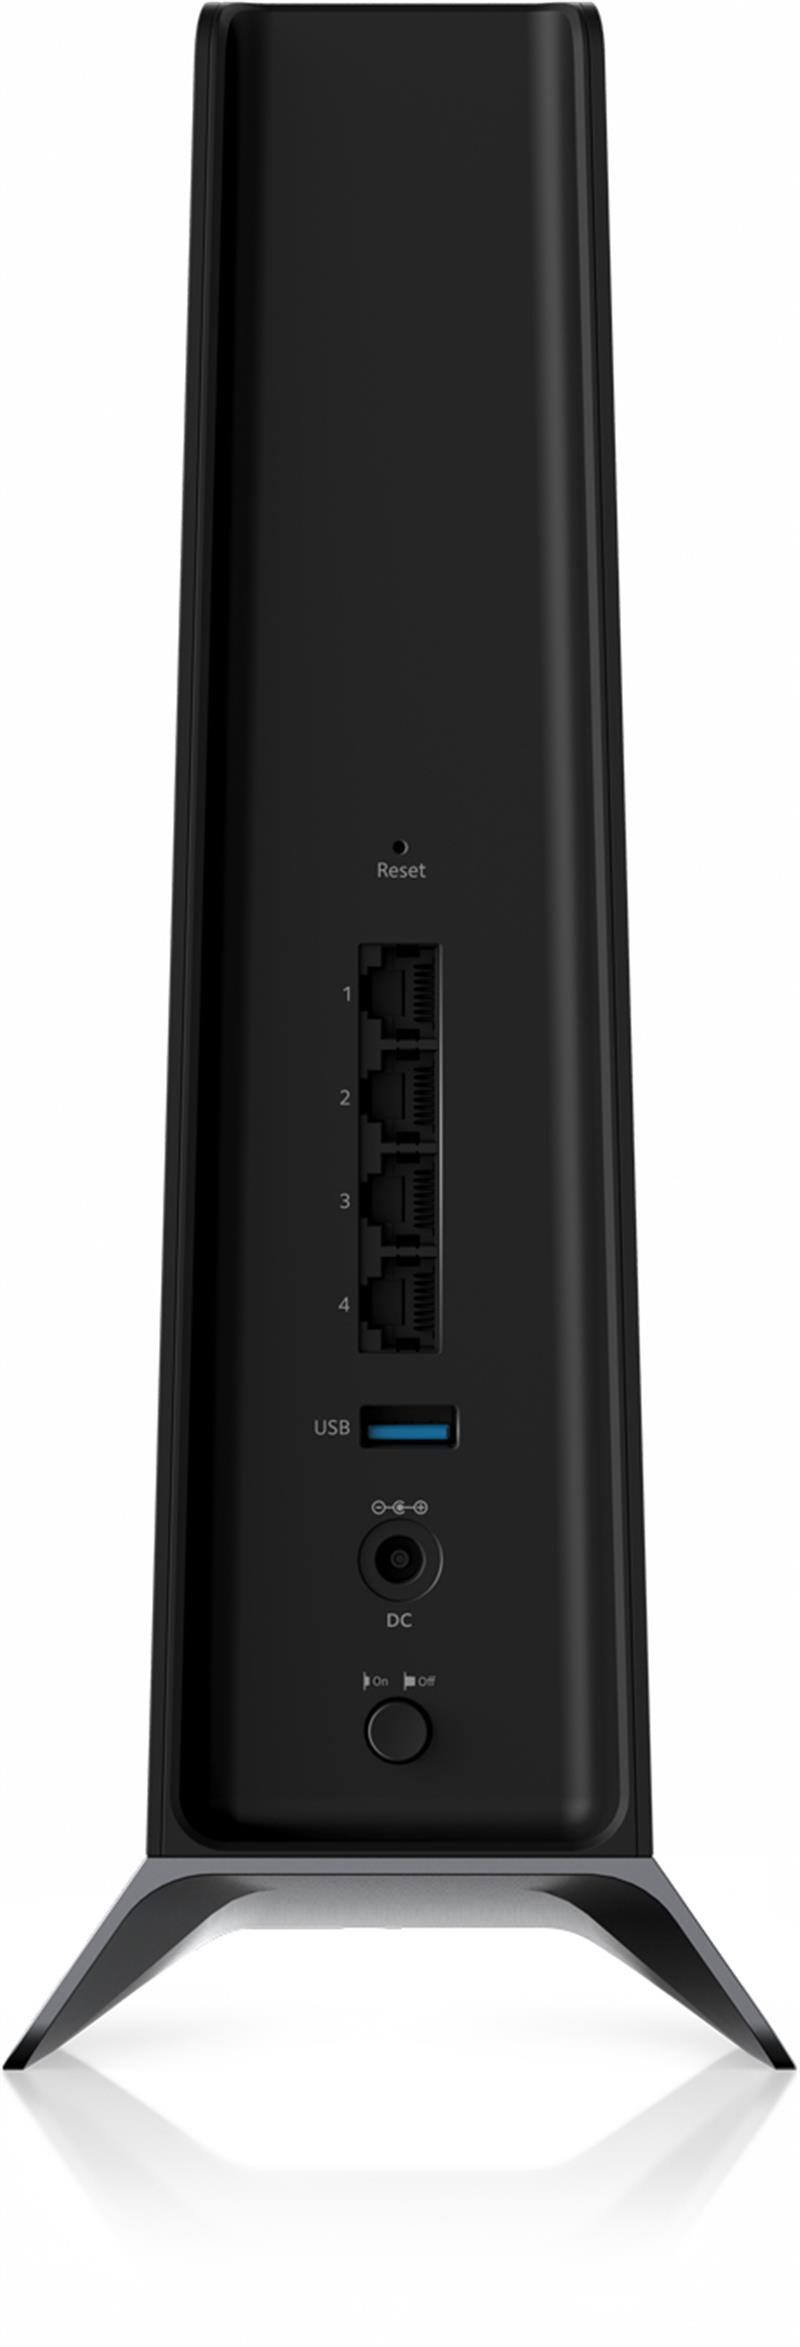 Netgear EAX80 draadloze router Gigabit Ethernet Zwart